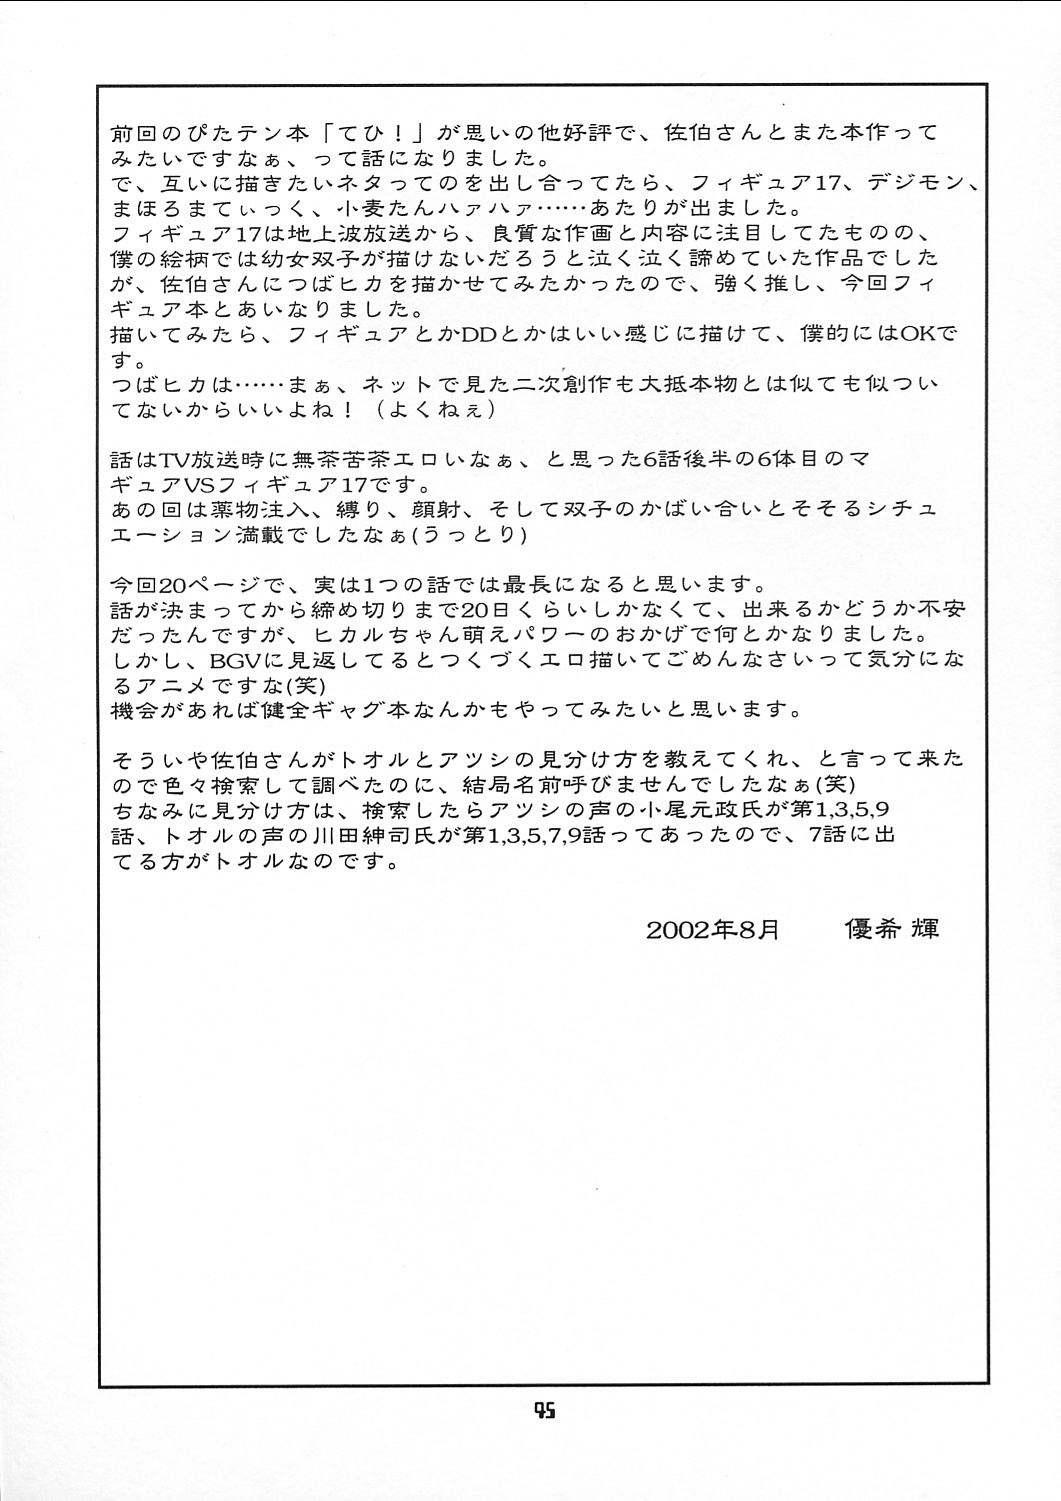 Sub Chiisaiko wa Suki desu ka - Figure 17 Camgirl - Page 44